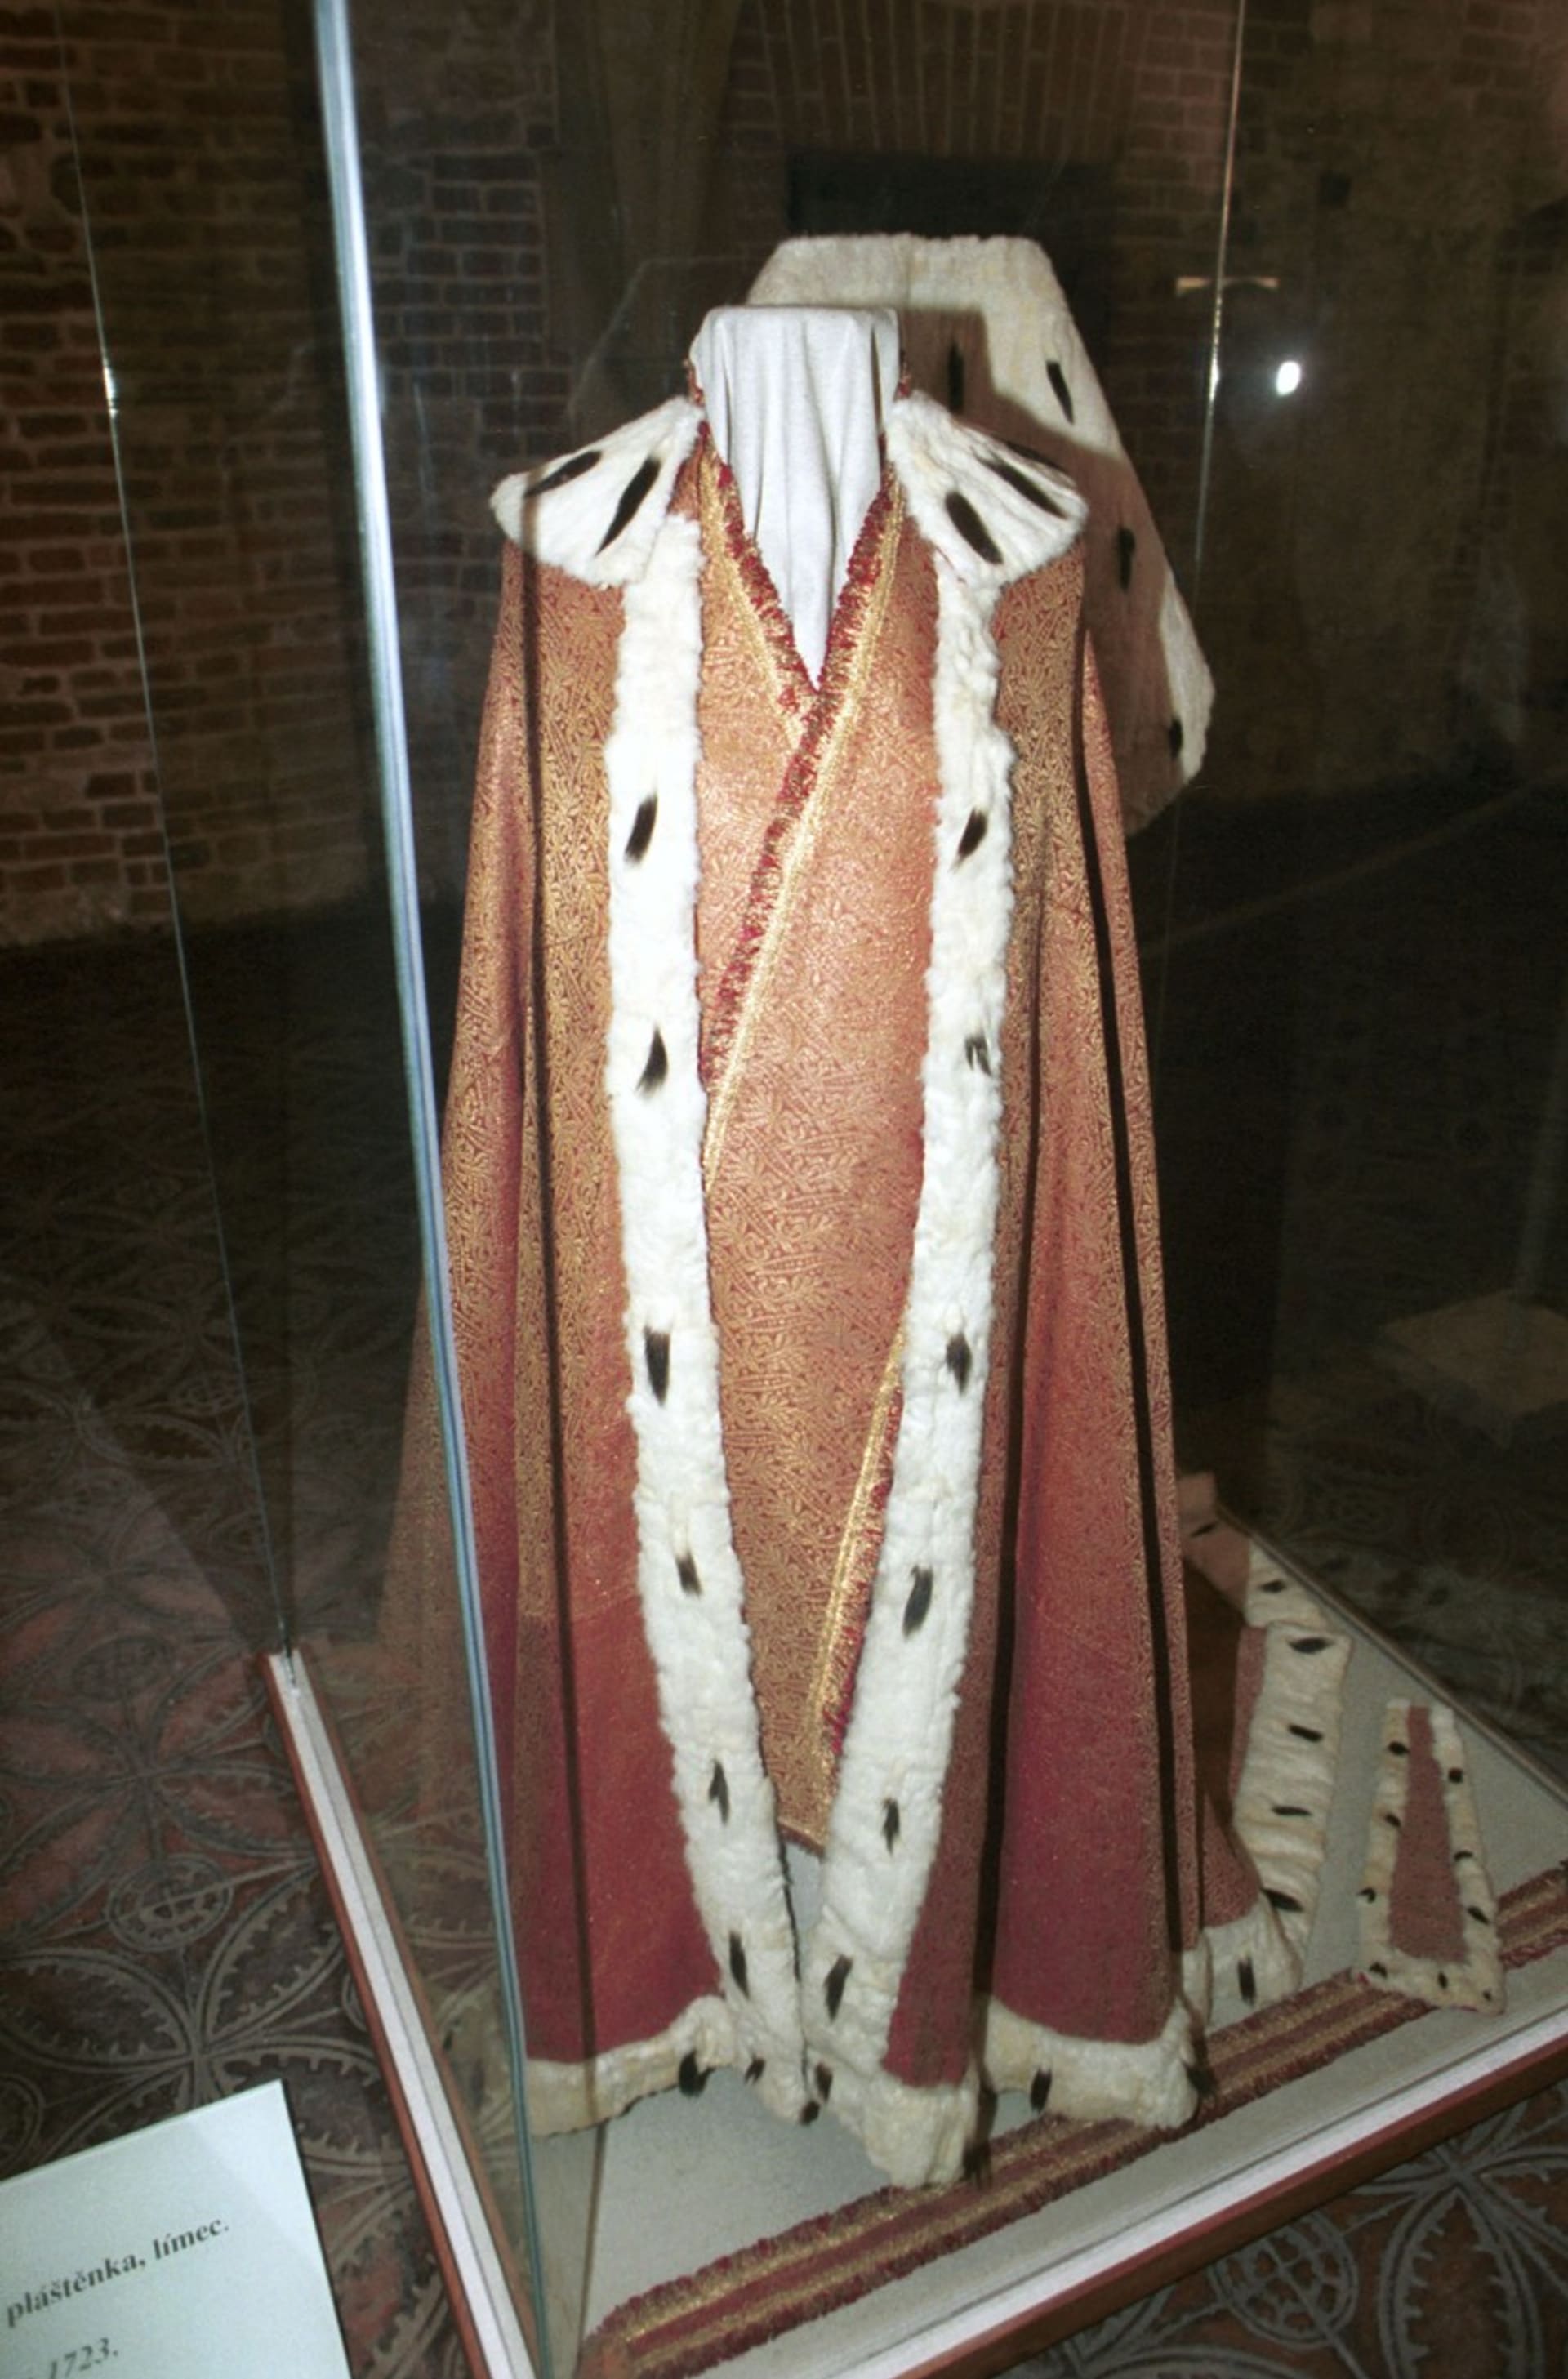 Korunovační plášť během výstavy Českých korunovačních klenotů v roce 1993.